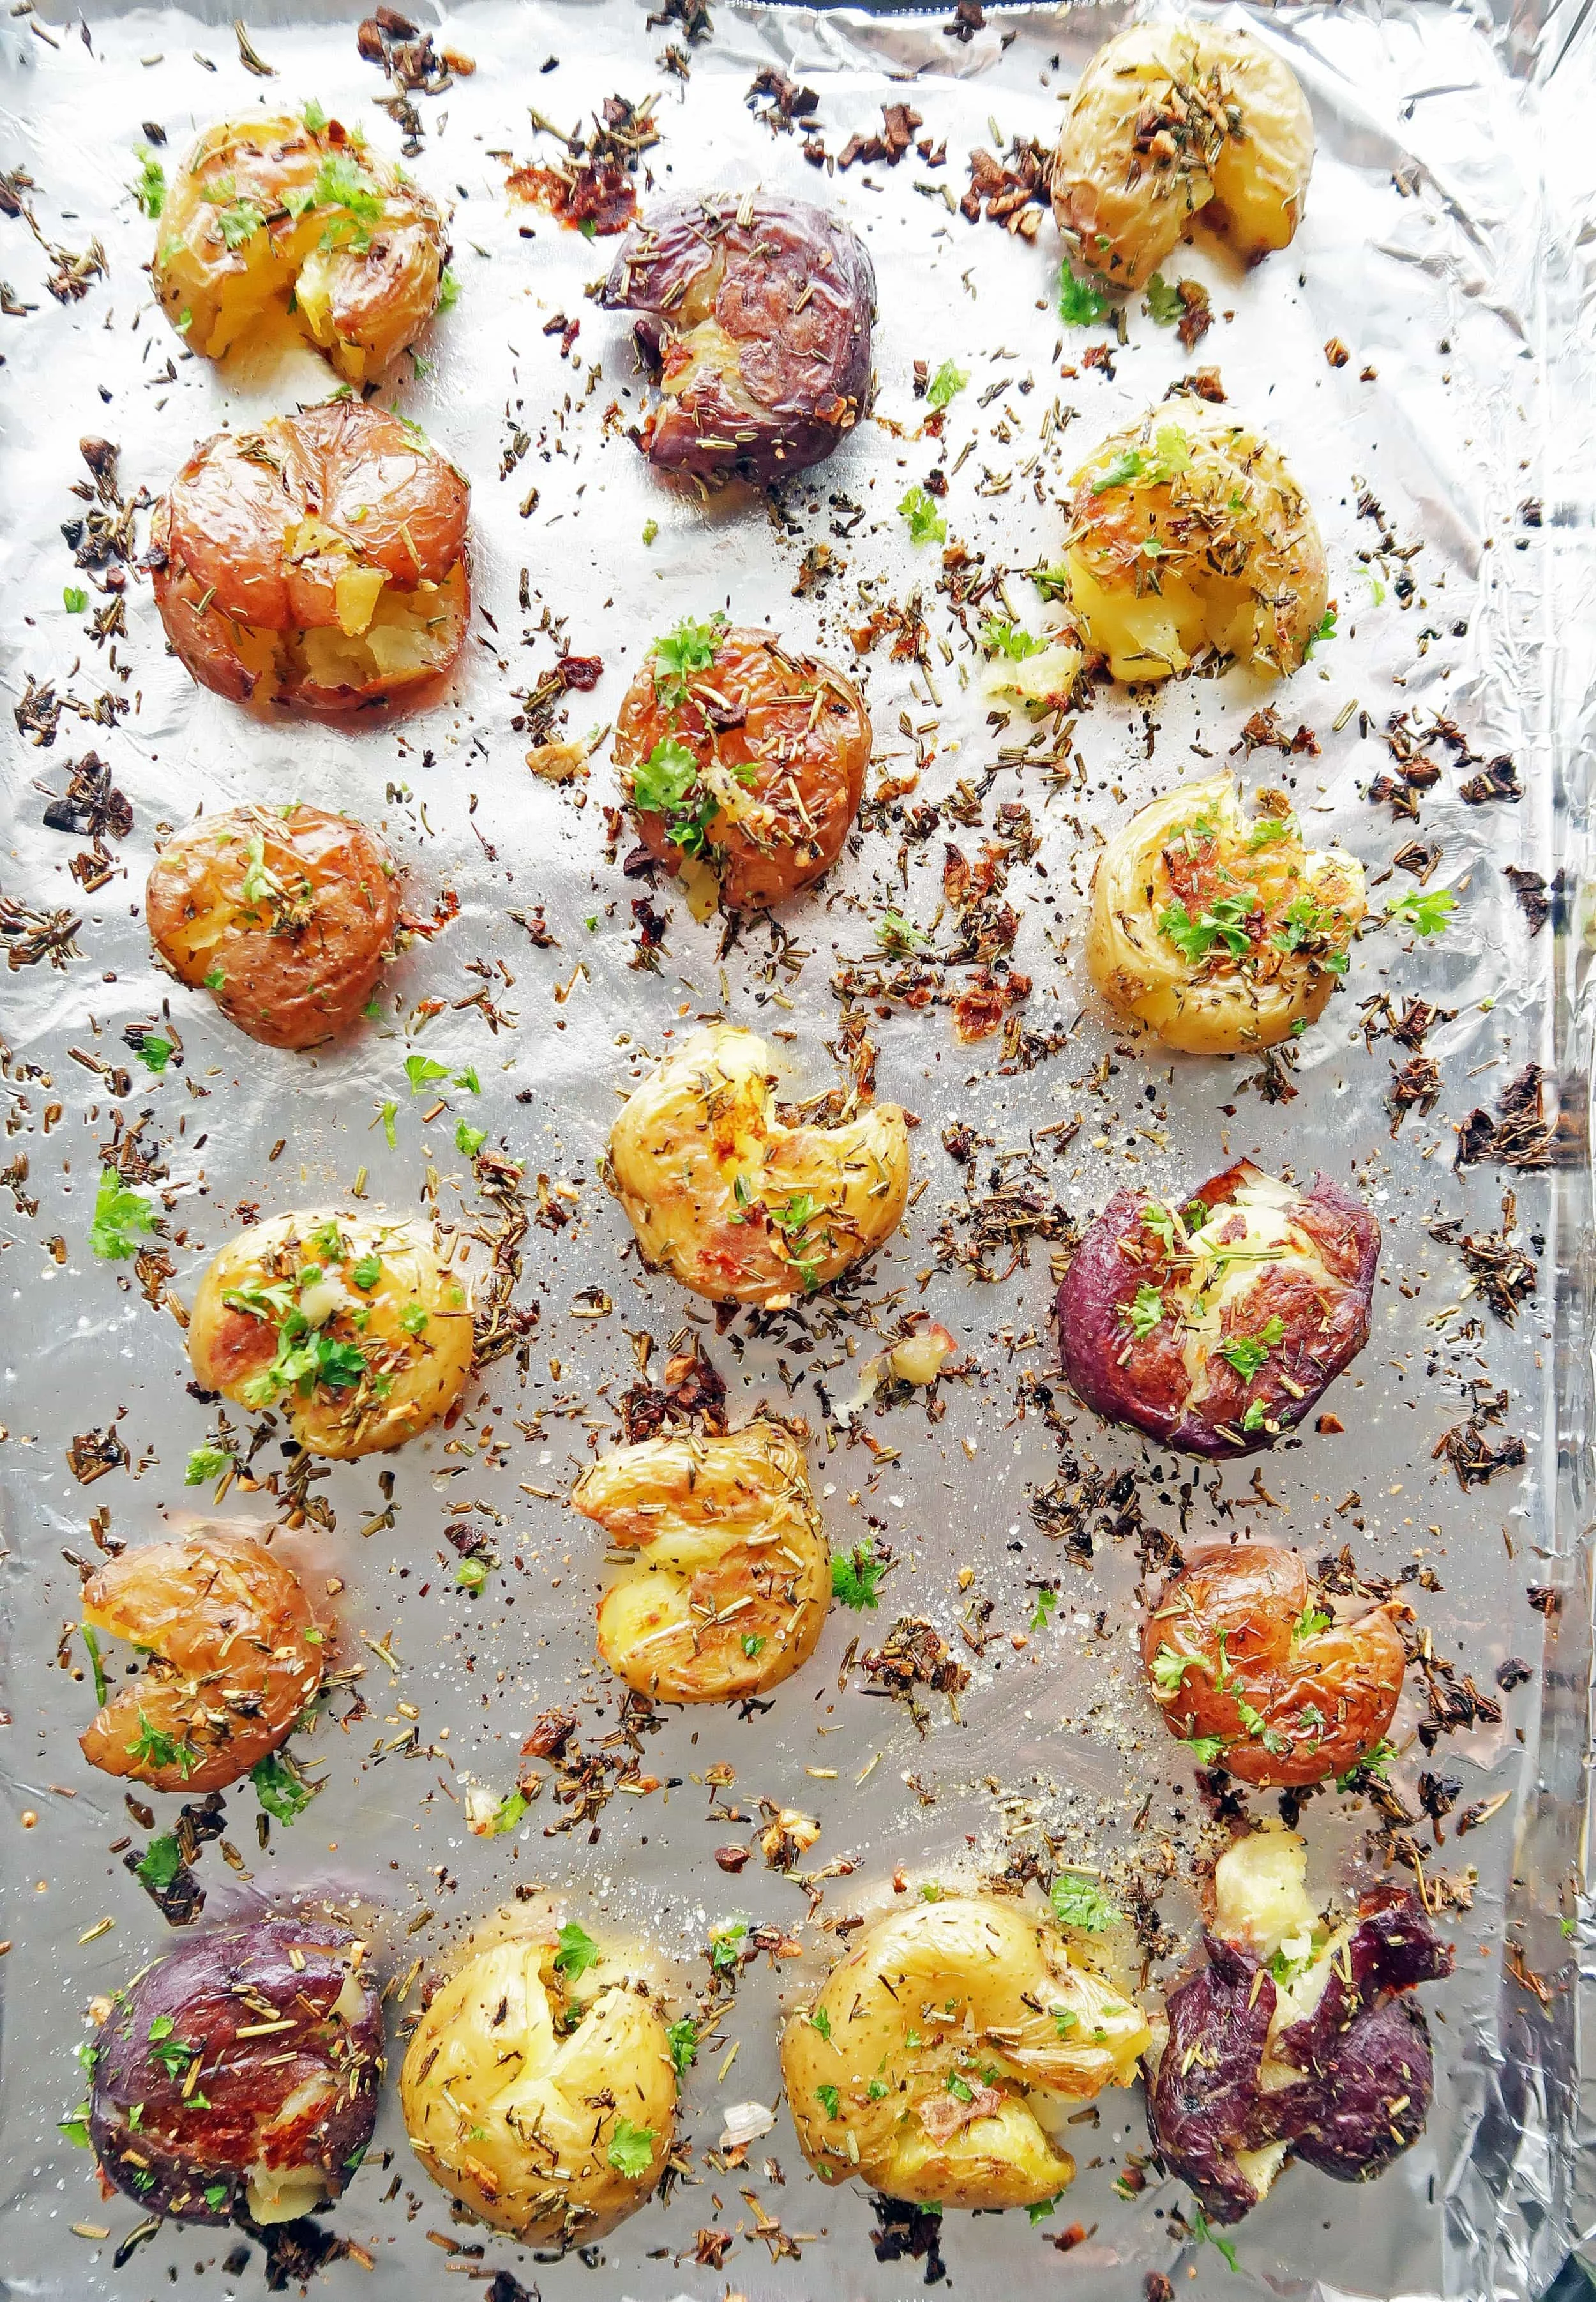 Vegan and gluten-free Crispy Garlic Smashed Baby Potatoes on a baking sheet.